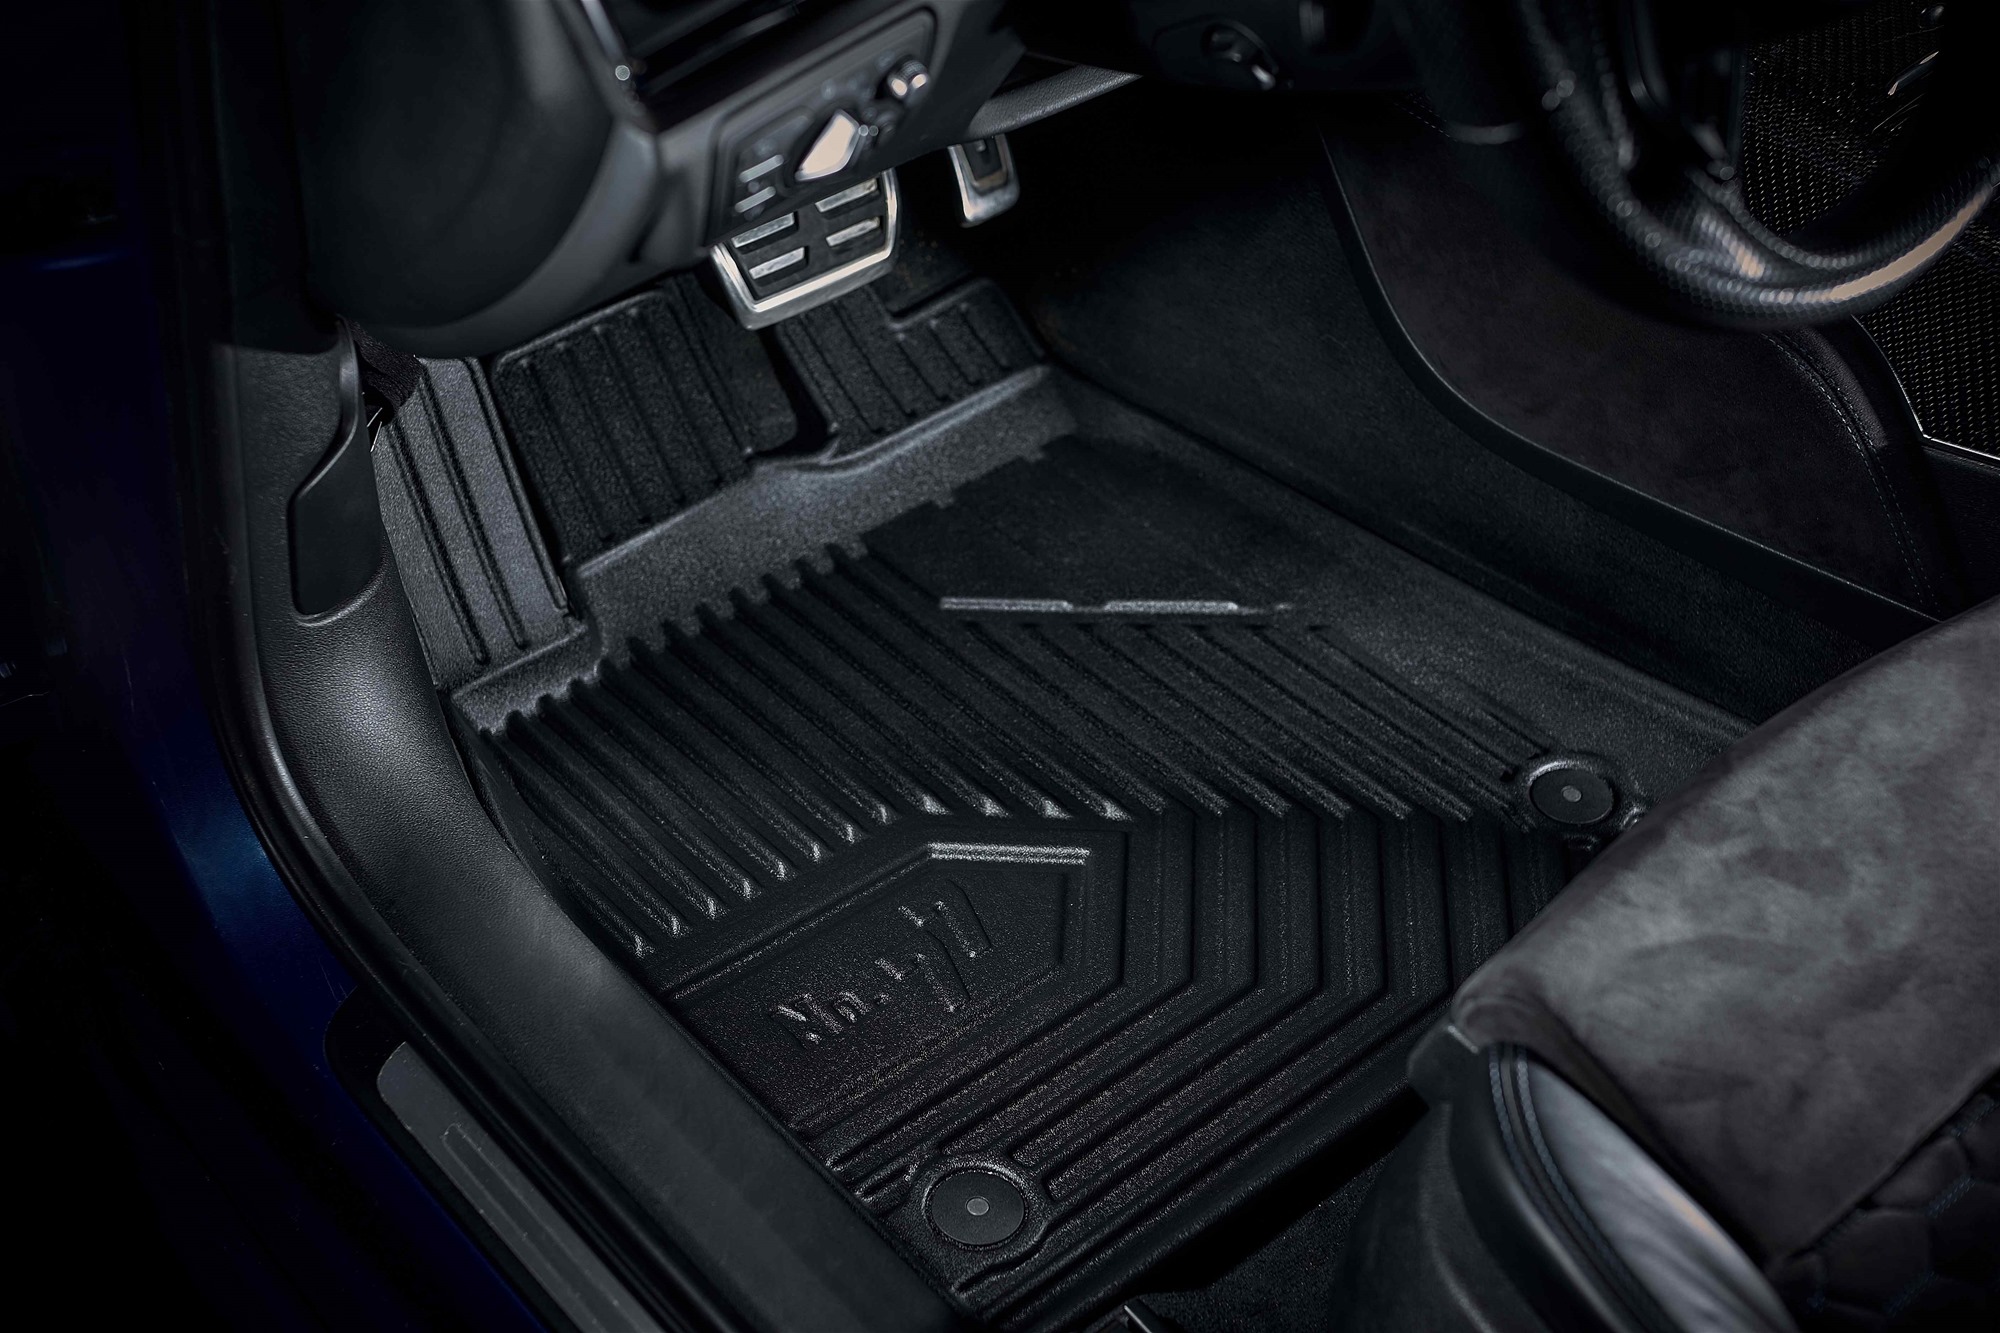 Car mats No77 for Audi Q7 2015-> 4pcs Frogum